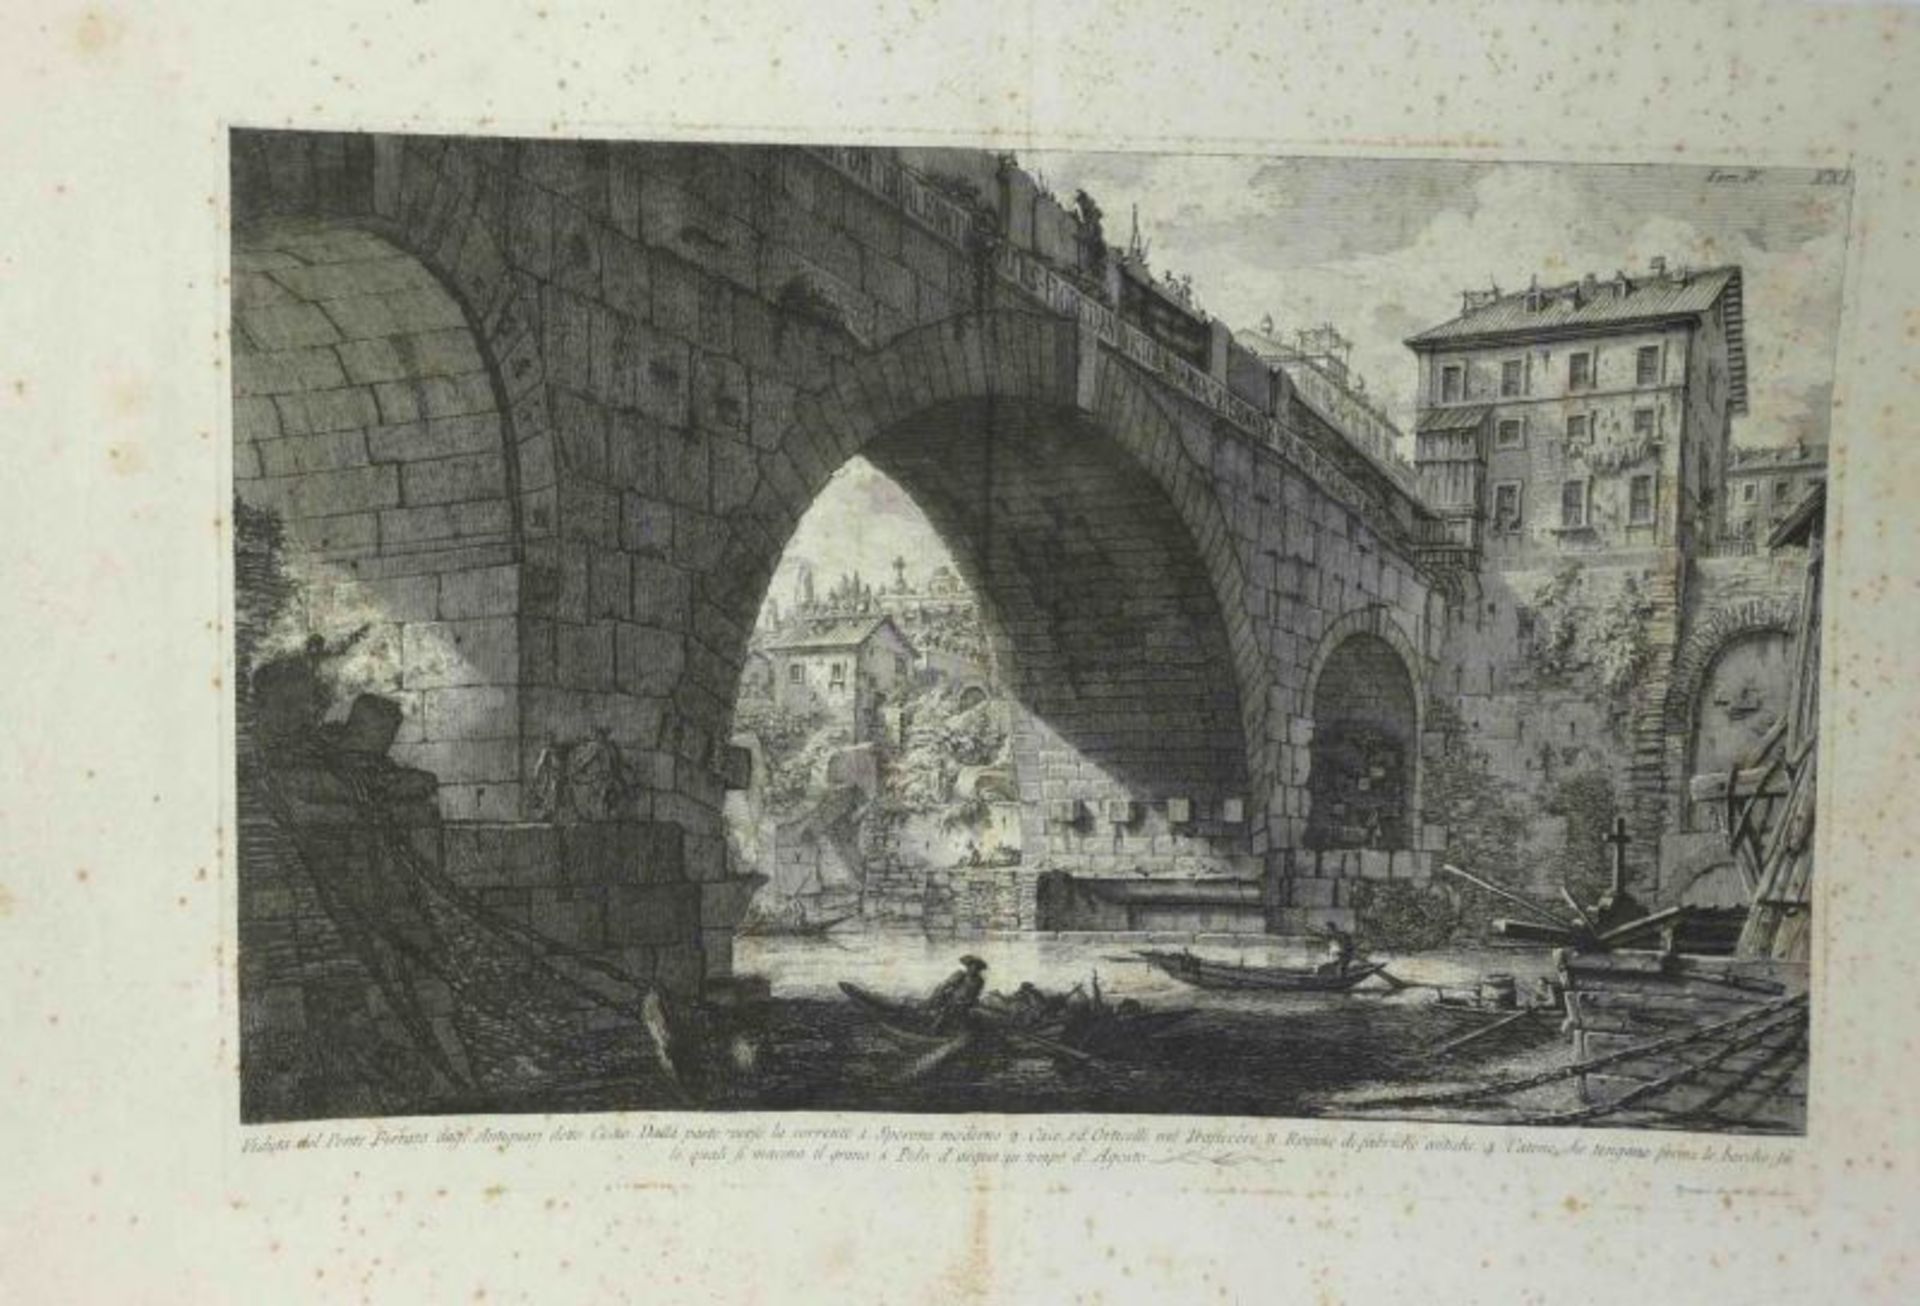 Piranesi, Giovanni-Battista "Veduta del Ponte Ferrato dagl' Antiquari detto Cestio" (Mogliano 1720- - Image 2 of 3